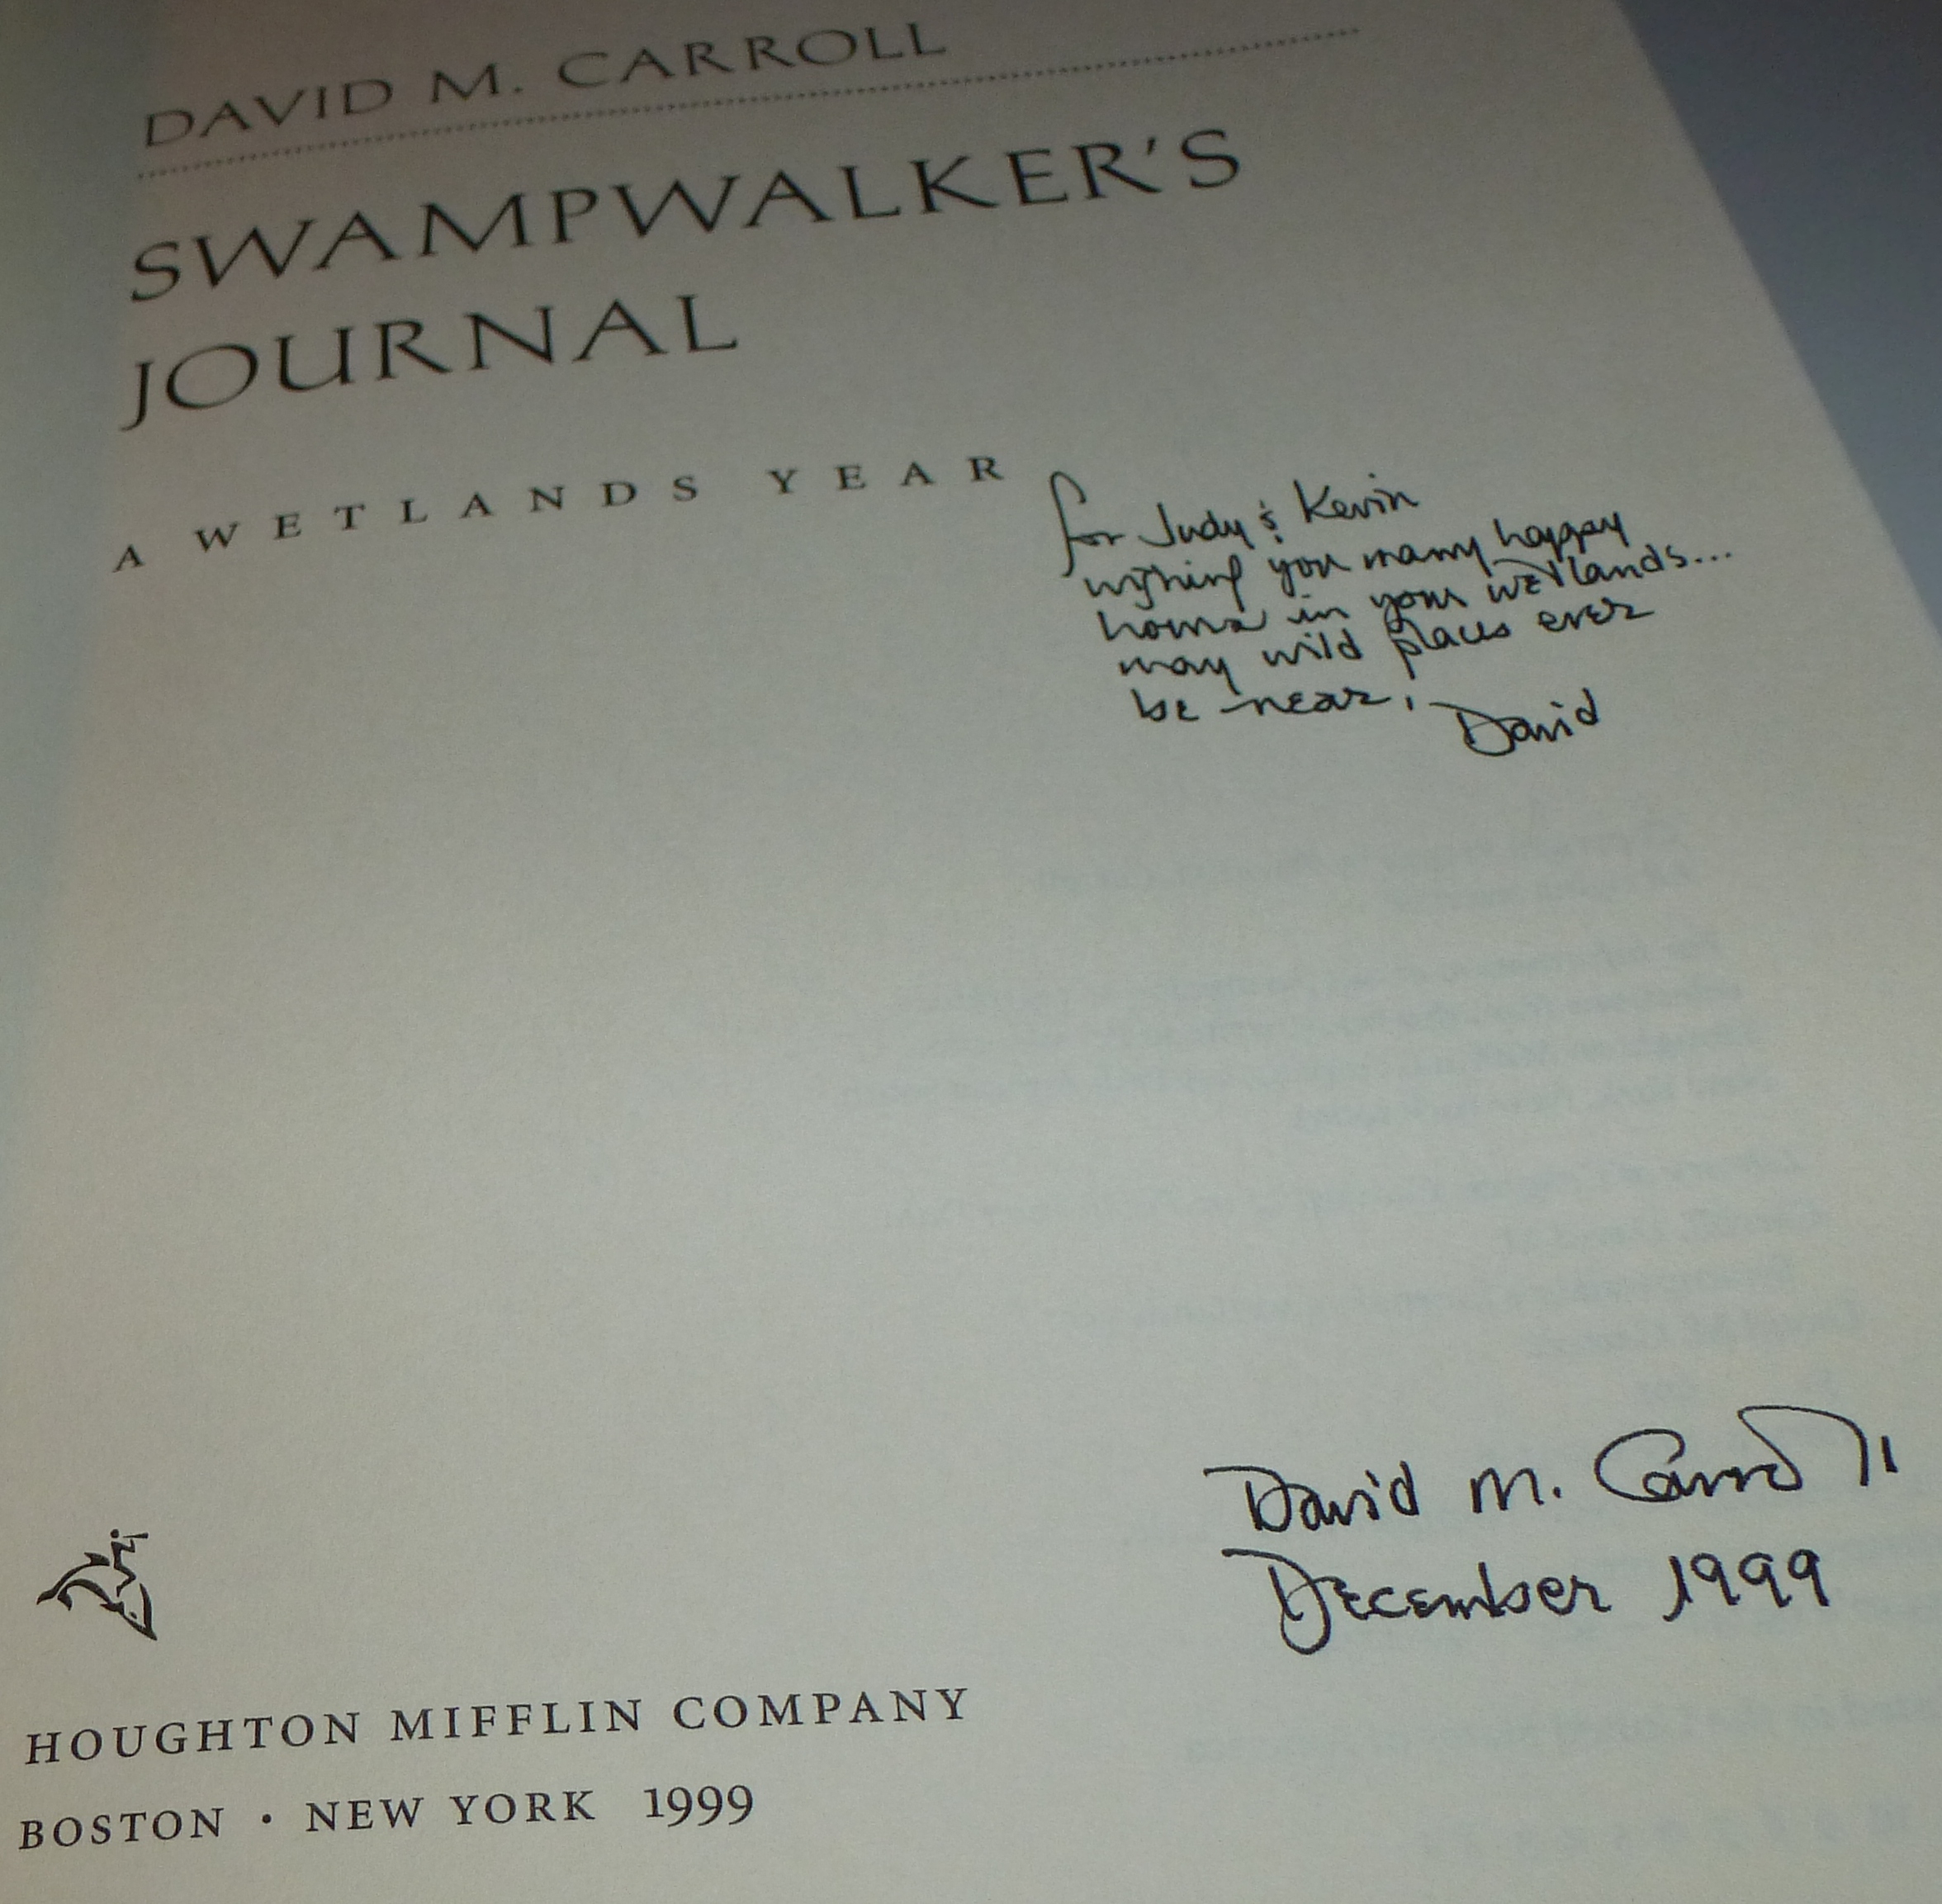 Swampwalkers Journal